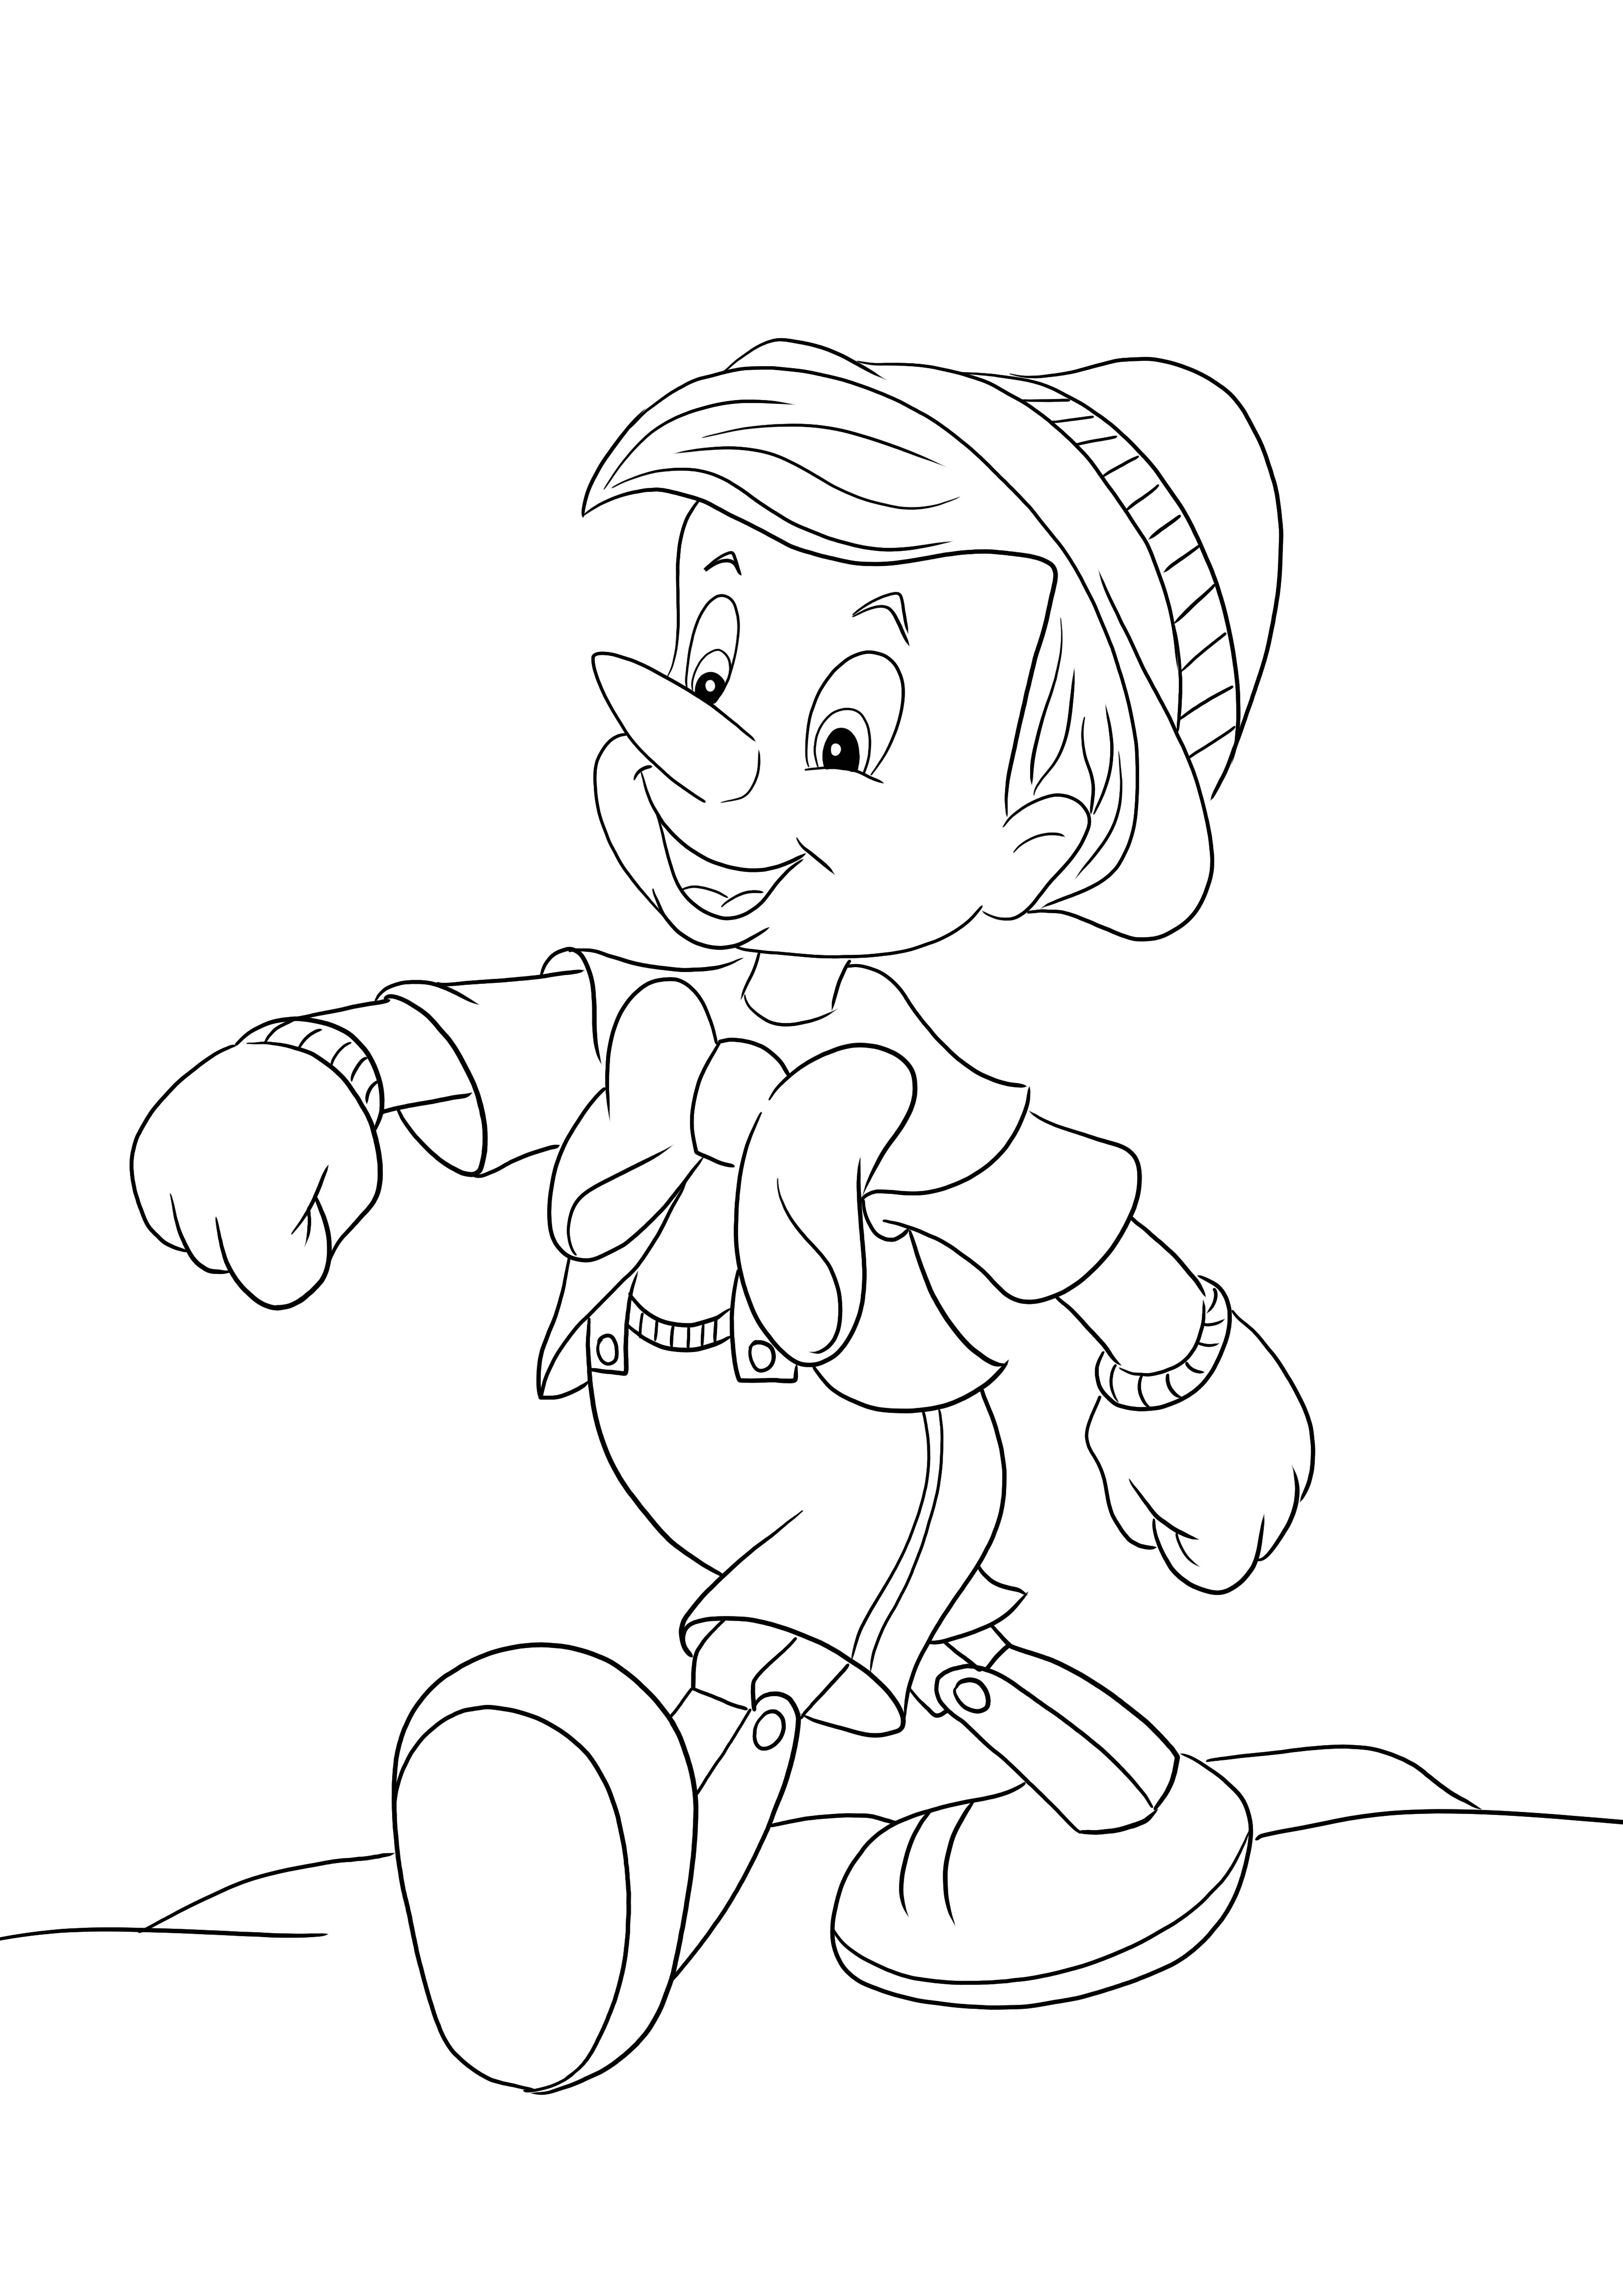 Kolorowanka Pinokio spaceruje dumnie — jest gotowa do pobrania i pokolorowania